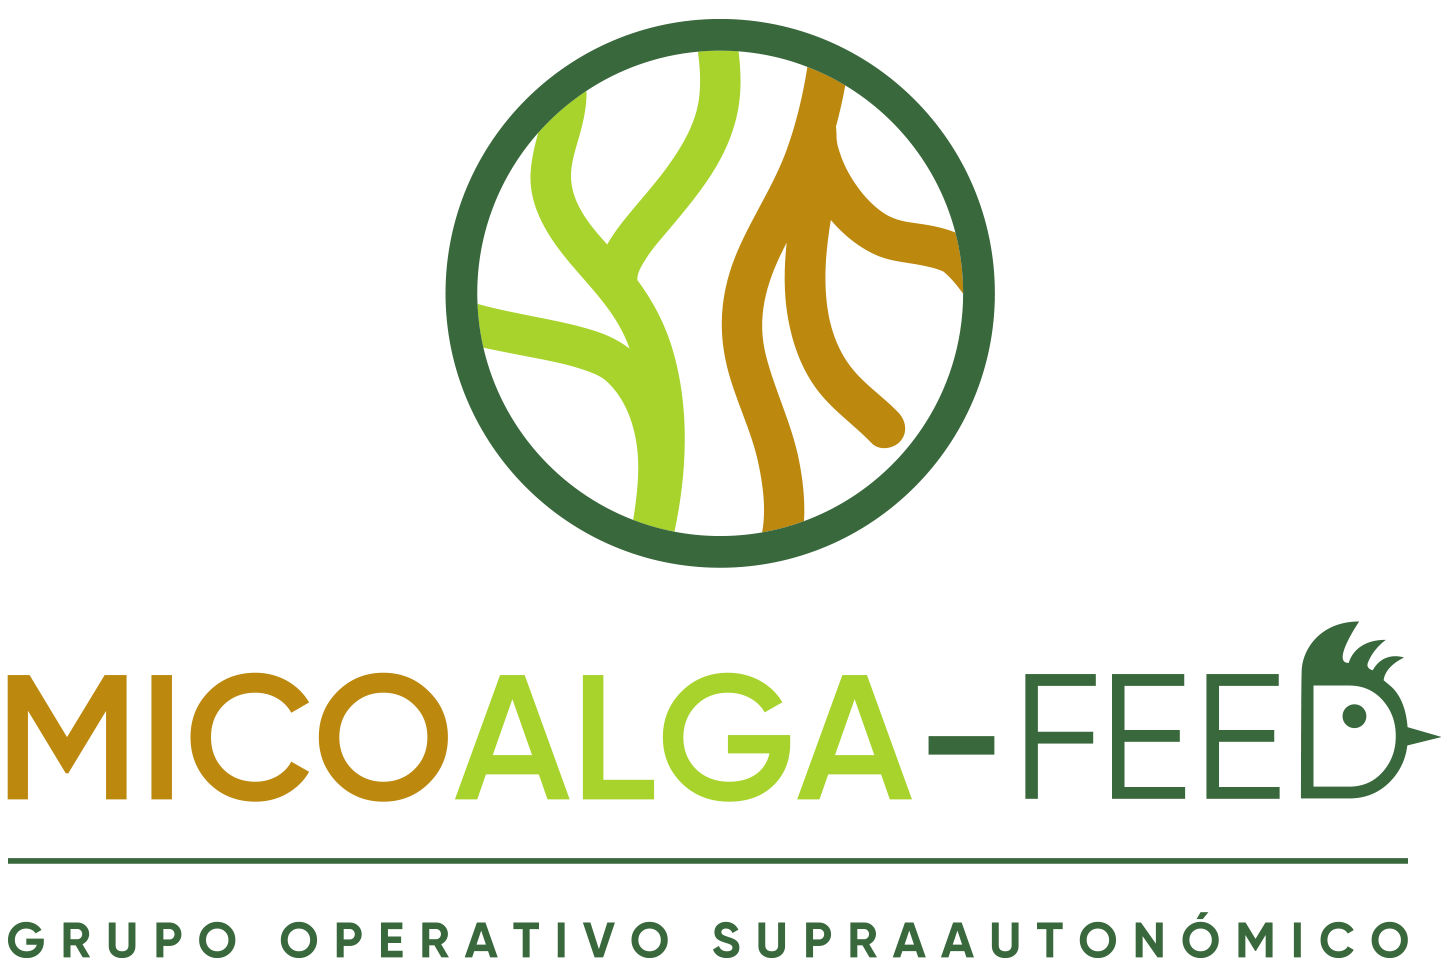 Micoalga-feed logo